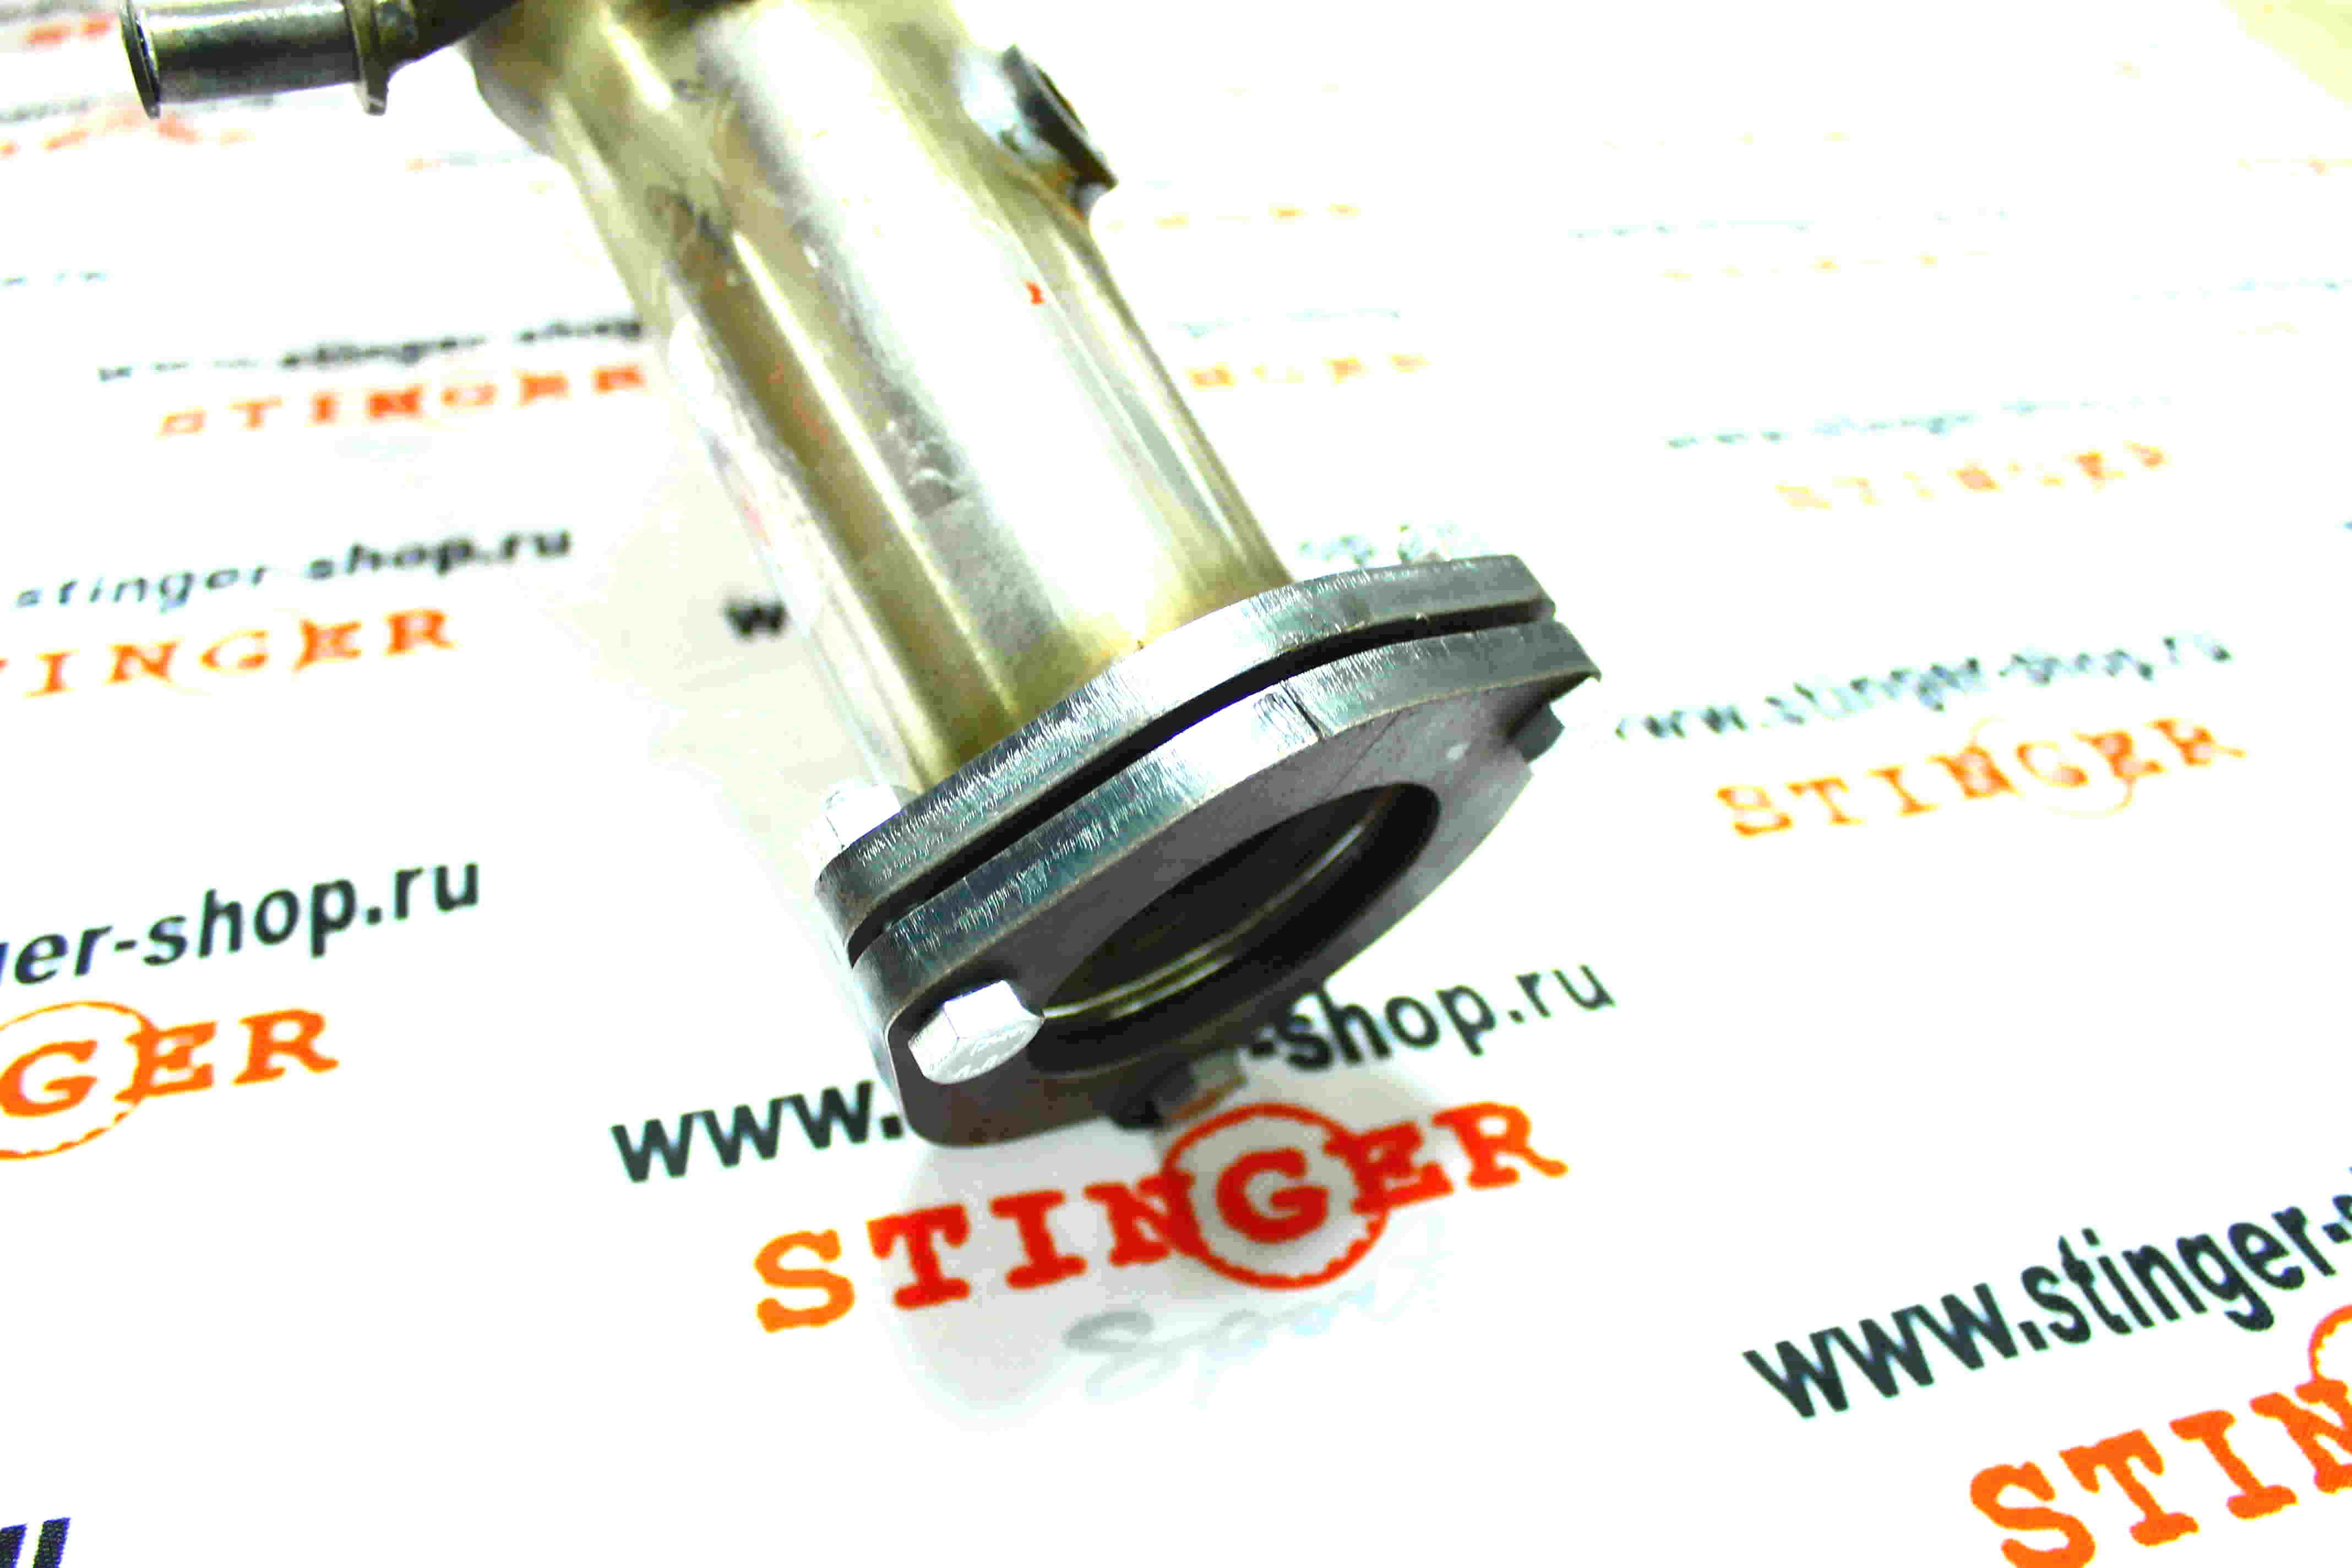 Выпускной коллектор / паук 4-2-1 (Спорт) 16V "Stinger Spor" для а/м ВАЗ 2180 Веста выход Ф60, с фланцем (2015 - 2017 г.в.) (нержавеющая сталь). Фото �6